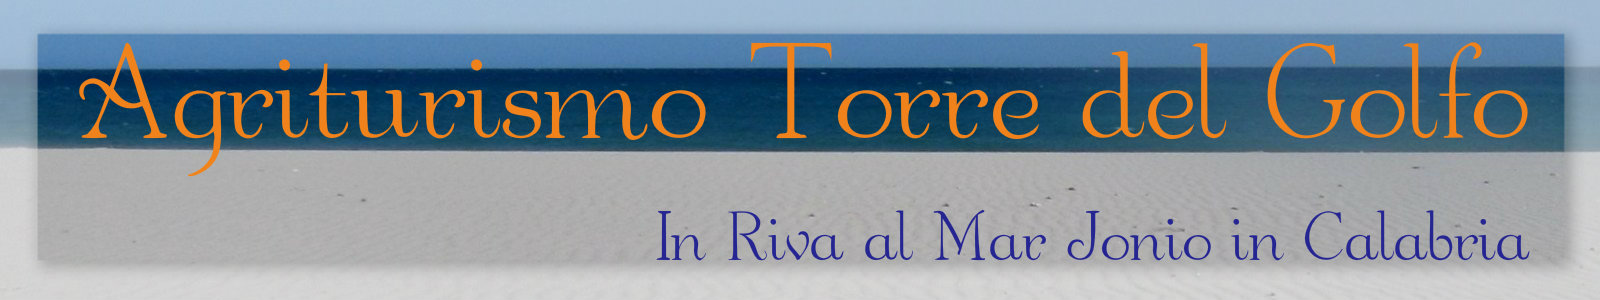 Agriturismo Torre del Golfo al mare in Calabria